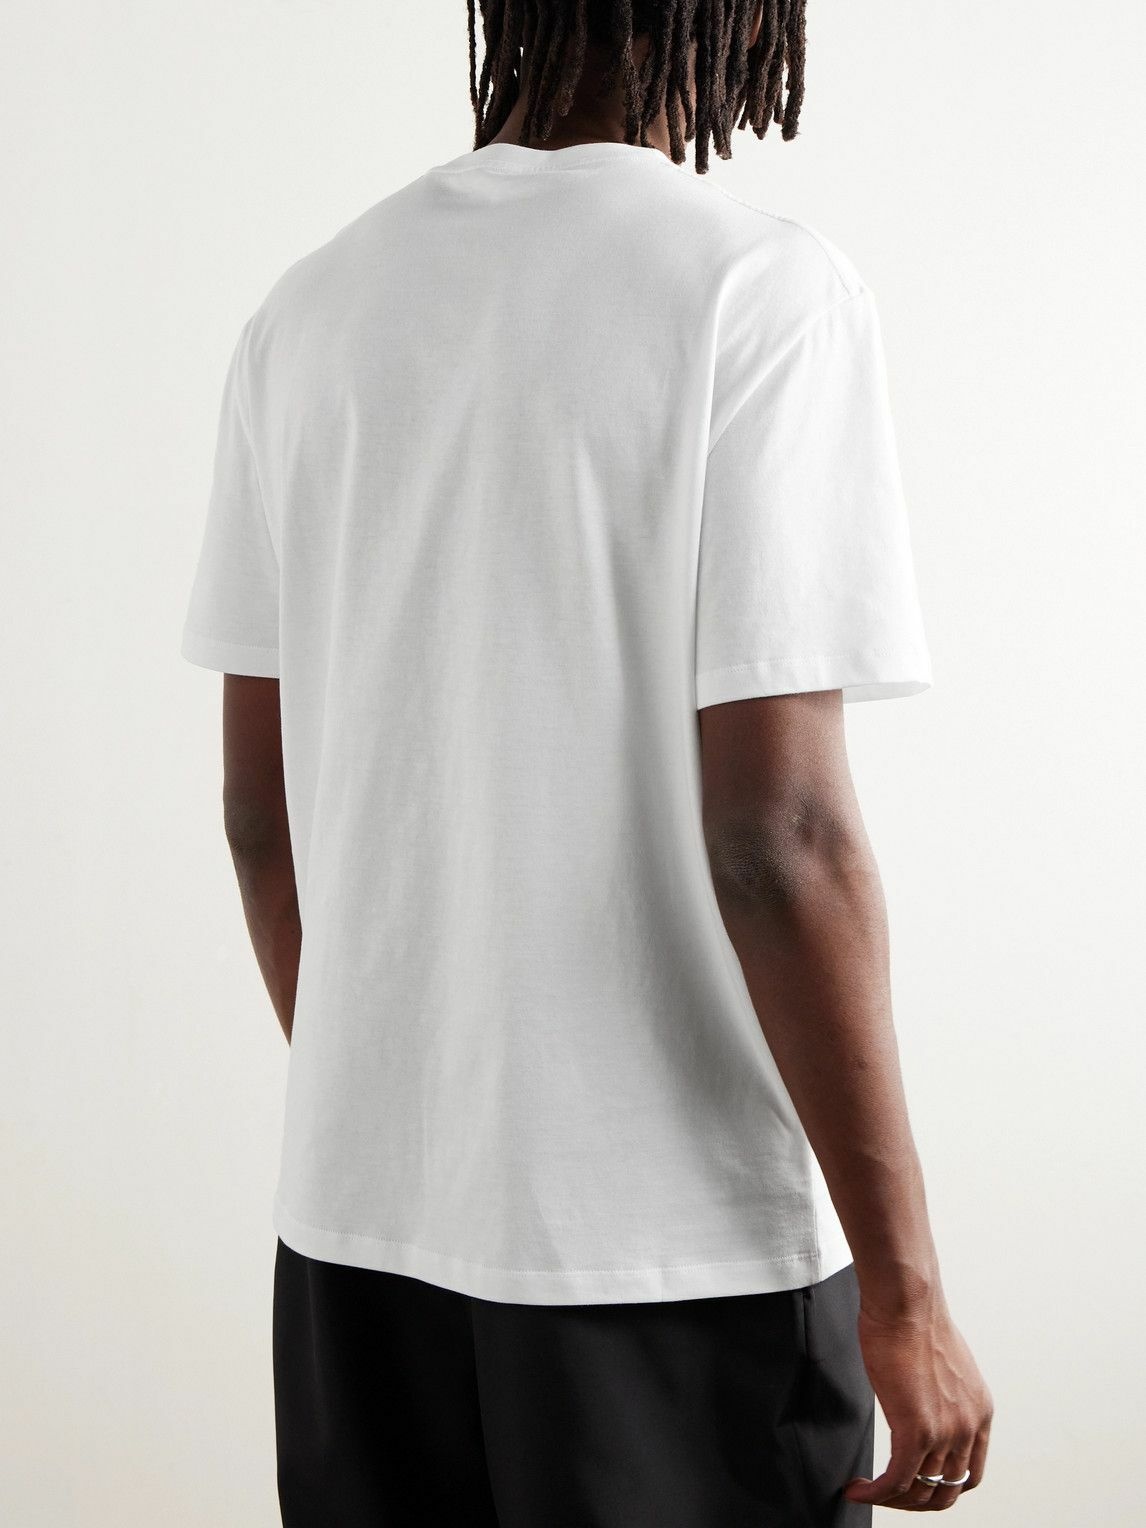 LOEWE - Logo-Appliquéd Cotton-Jersey T-Shirt - White Loewe